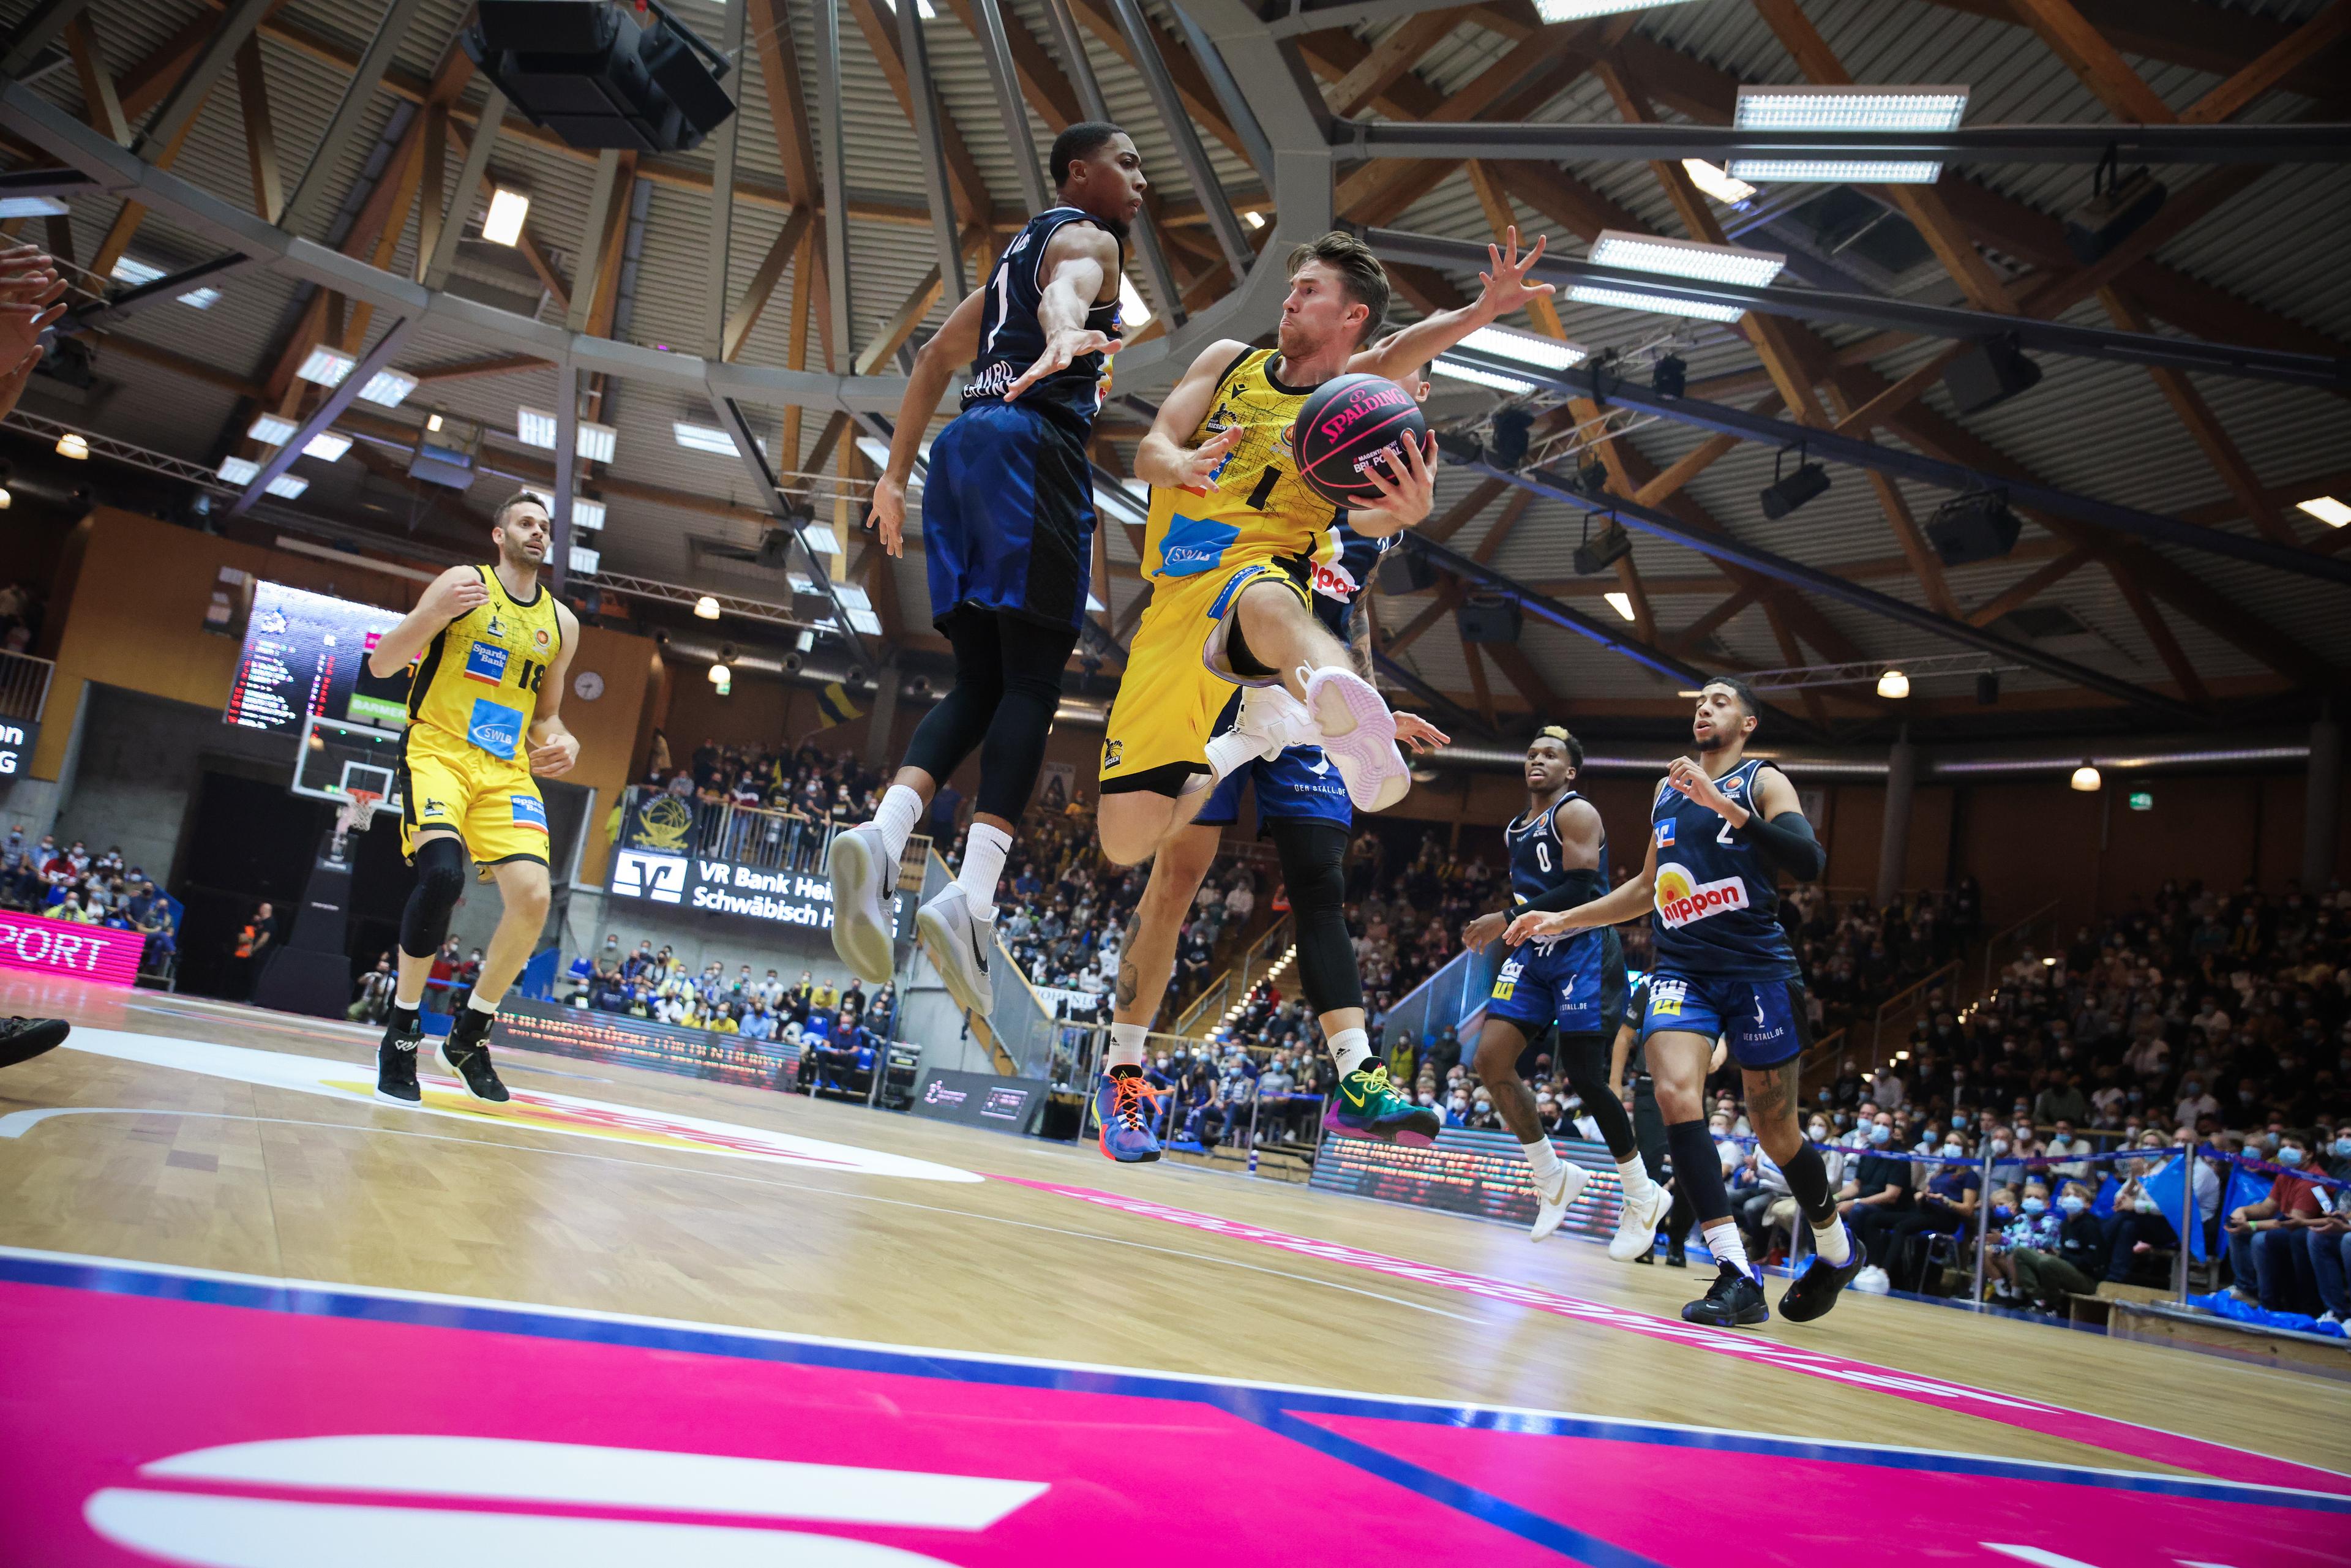 Mit dem FIBA Europe Cup nimmt in dieser Woche auch der vierte europäische Wettbewerb seinen Spielbetrieb auf. Für die beiden deutschen Vertreter Crailsheim und Bayreuth geht es in Dänemark bzw. Österreich (der Heimat von Trainer Raul Korner) auswärts los.